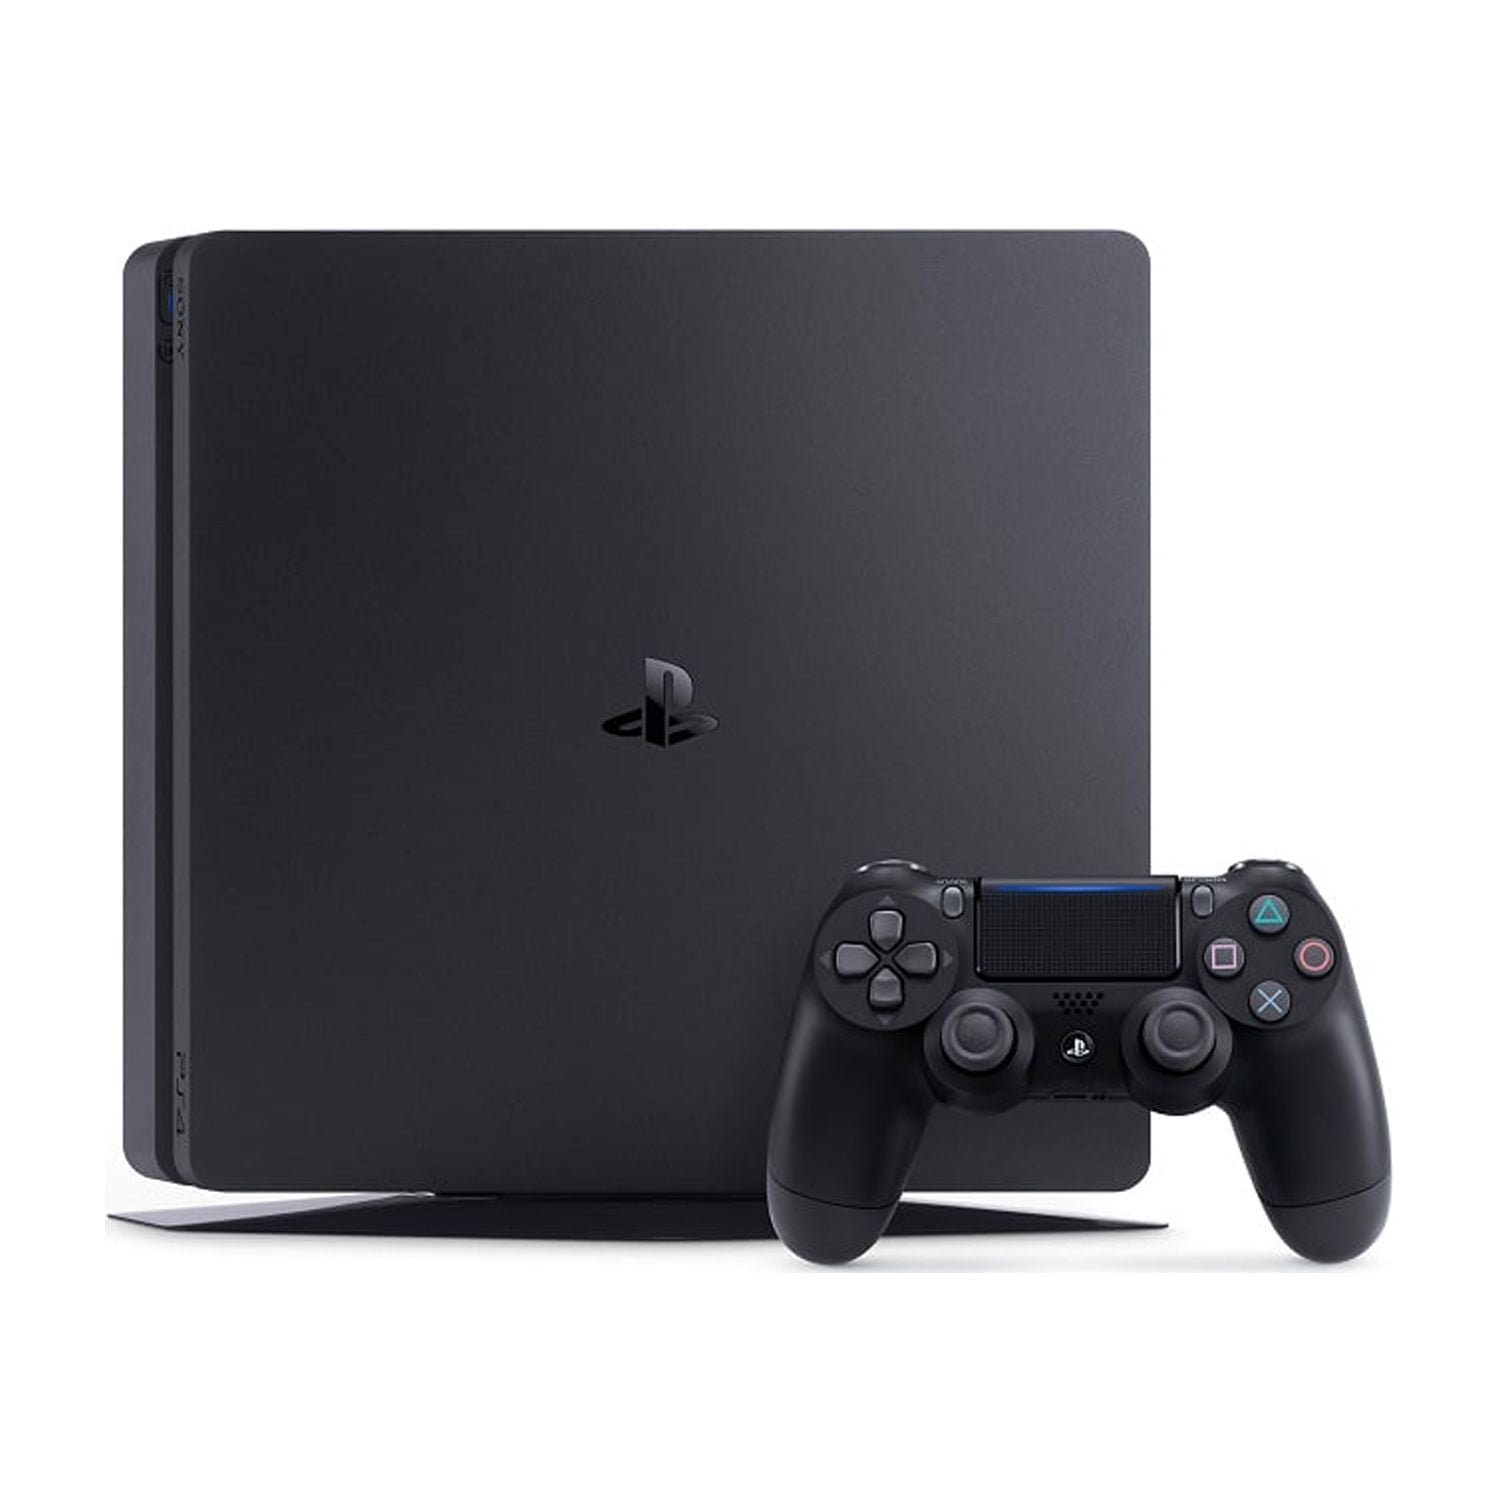 Loja Nova era Games e Informática - Playstation 4 SLIM HD 1TB Preço: R$  1.289,00 (no dinheiro) Confira disponibilidade e condições de pagamento  Link do produto